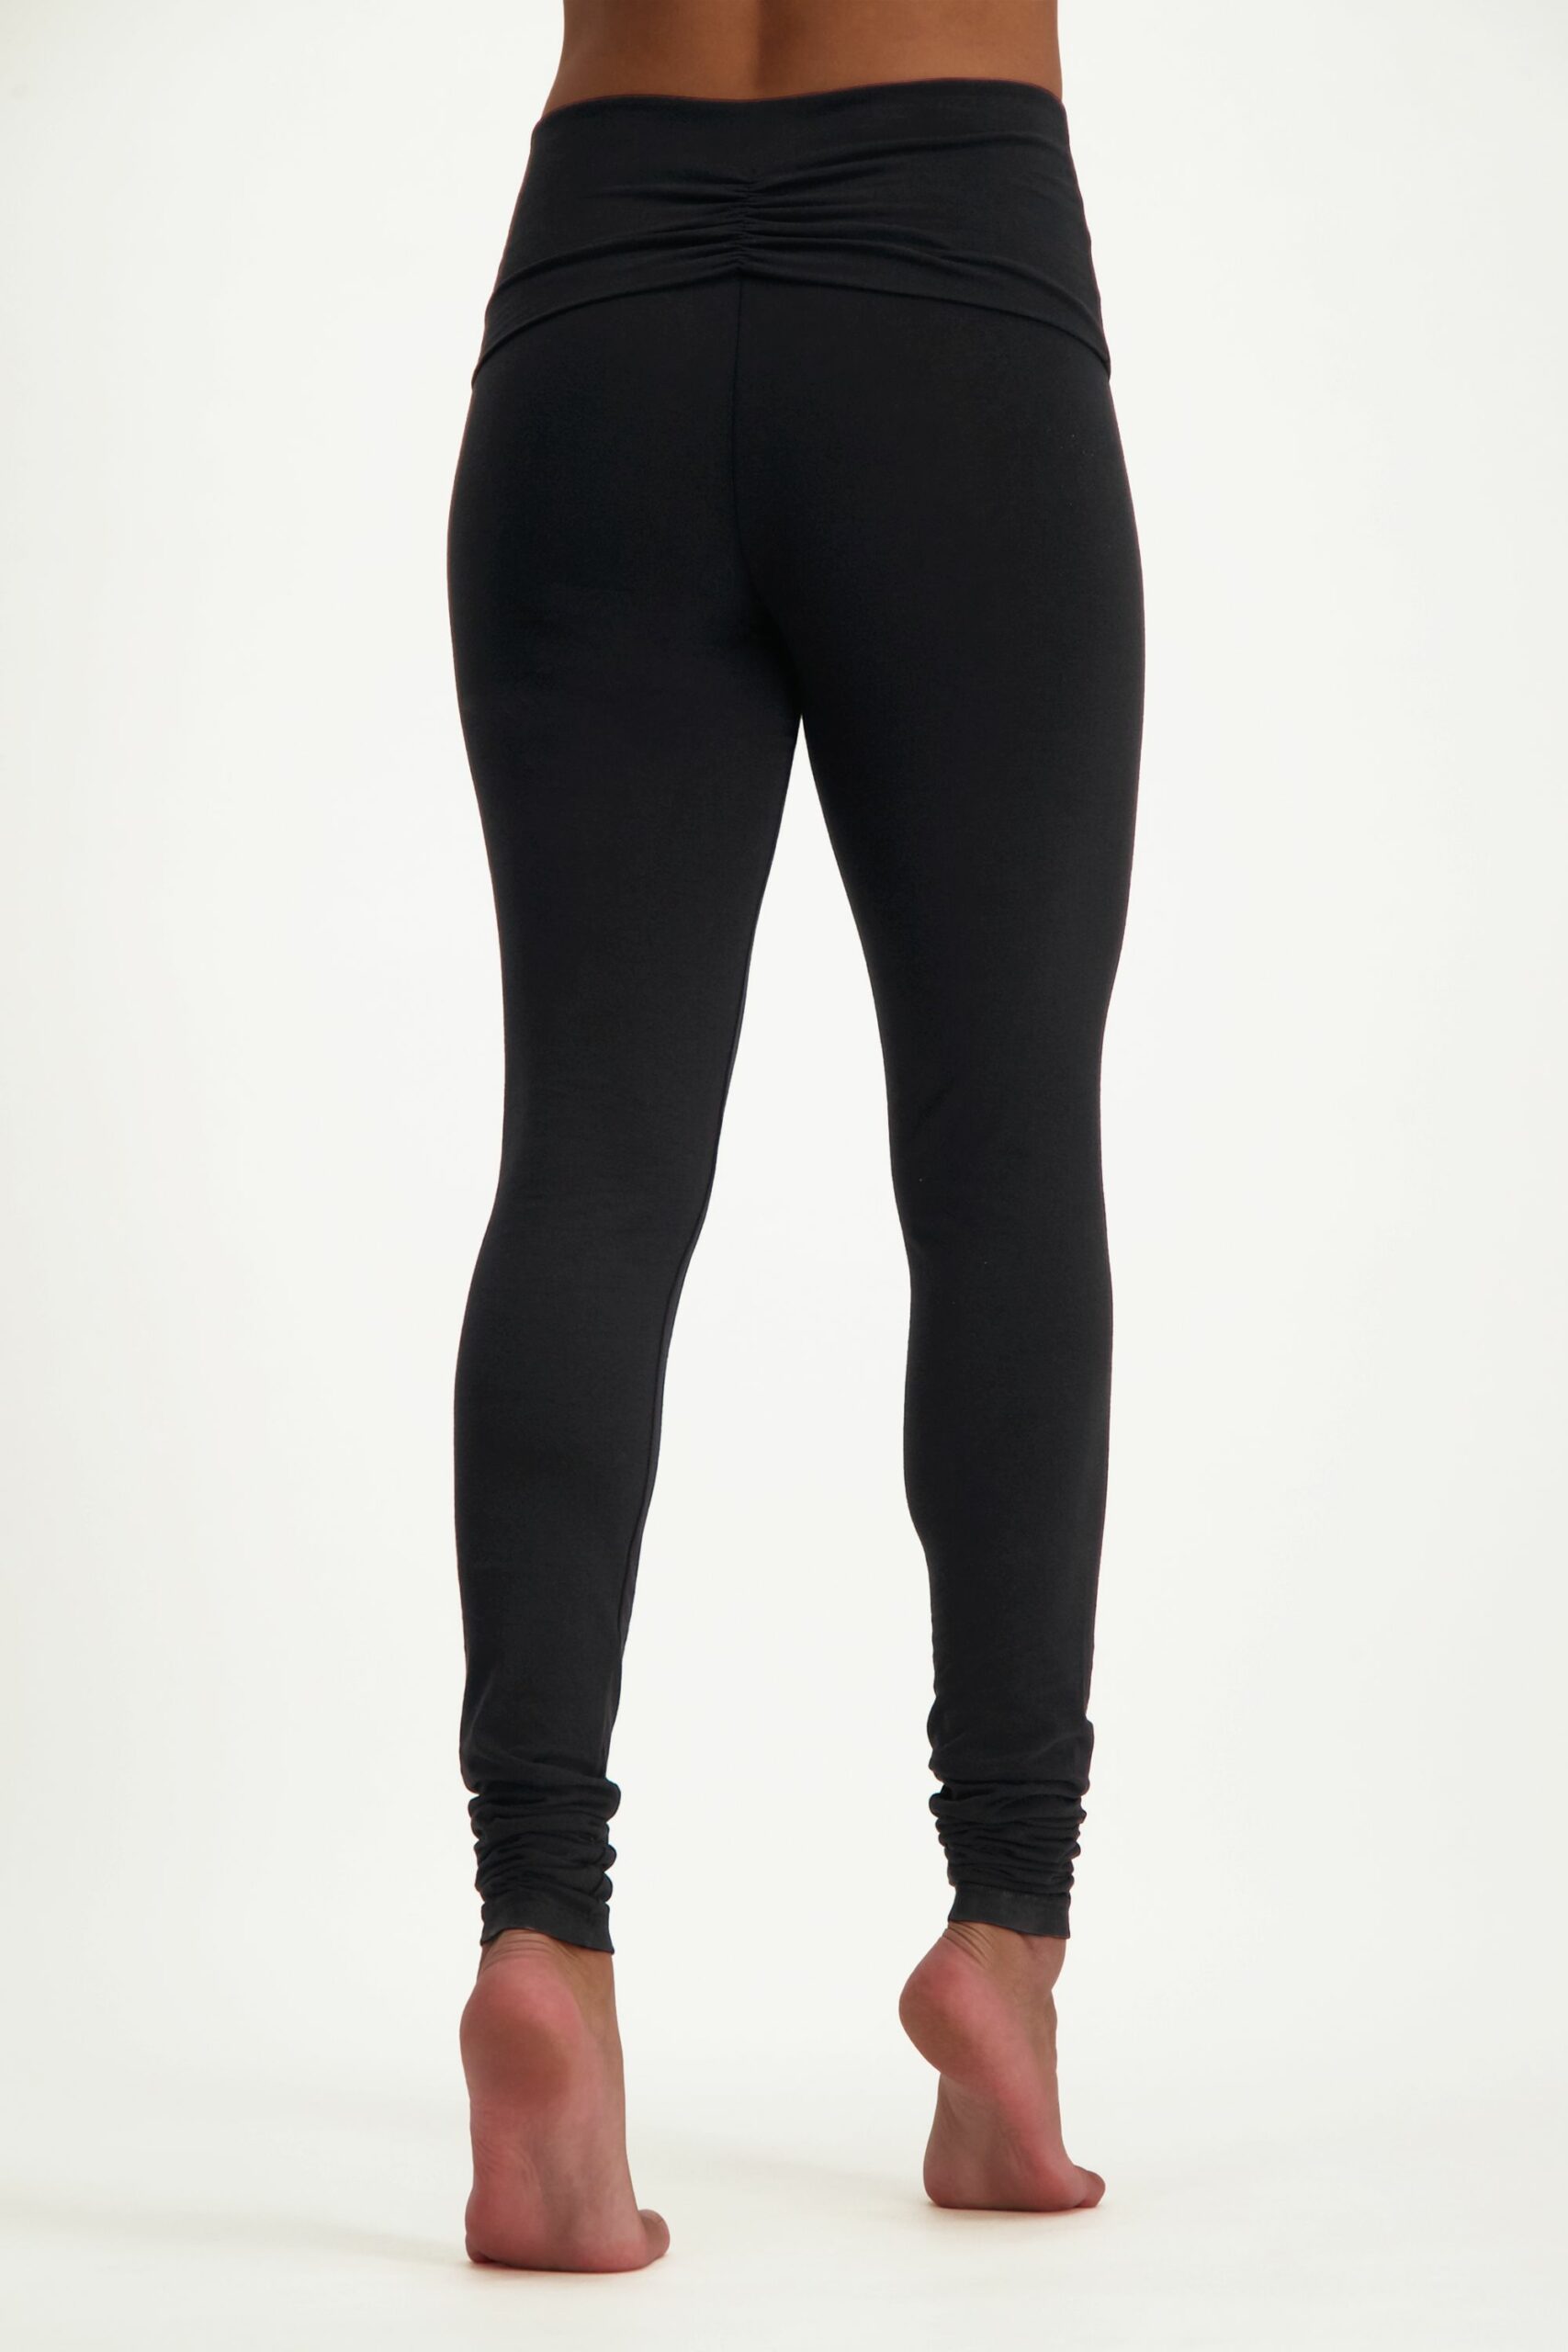  Karang-w black - Women's leggings - KILPI - 51.16